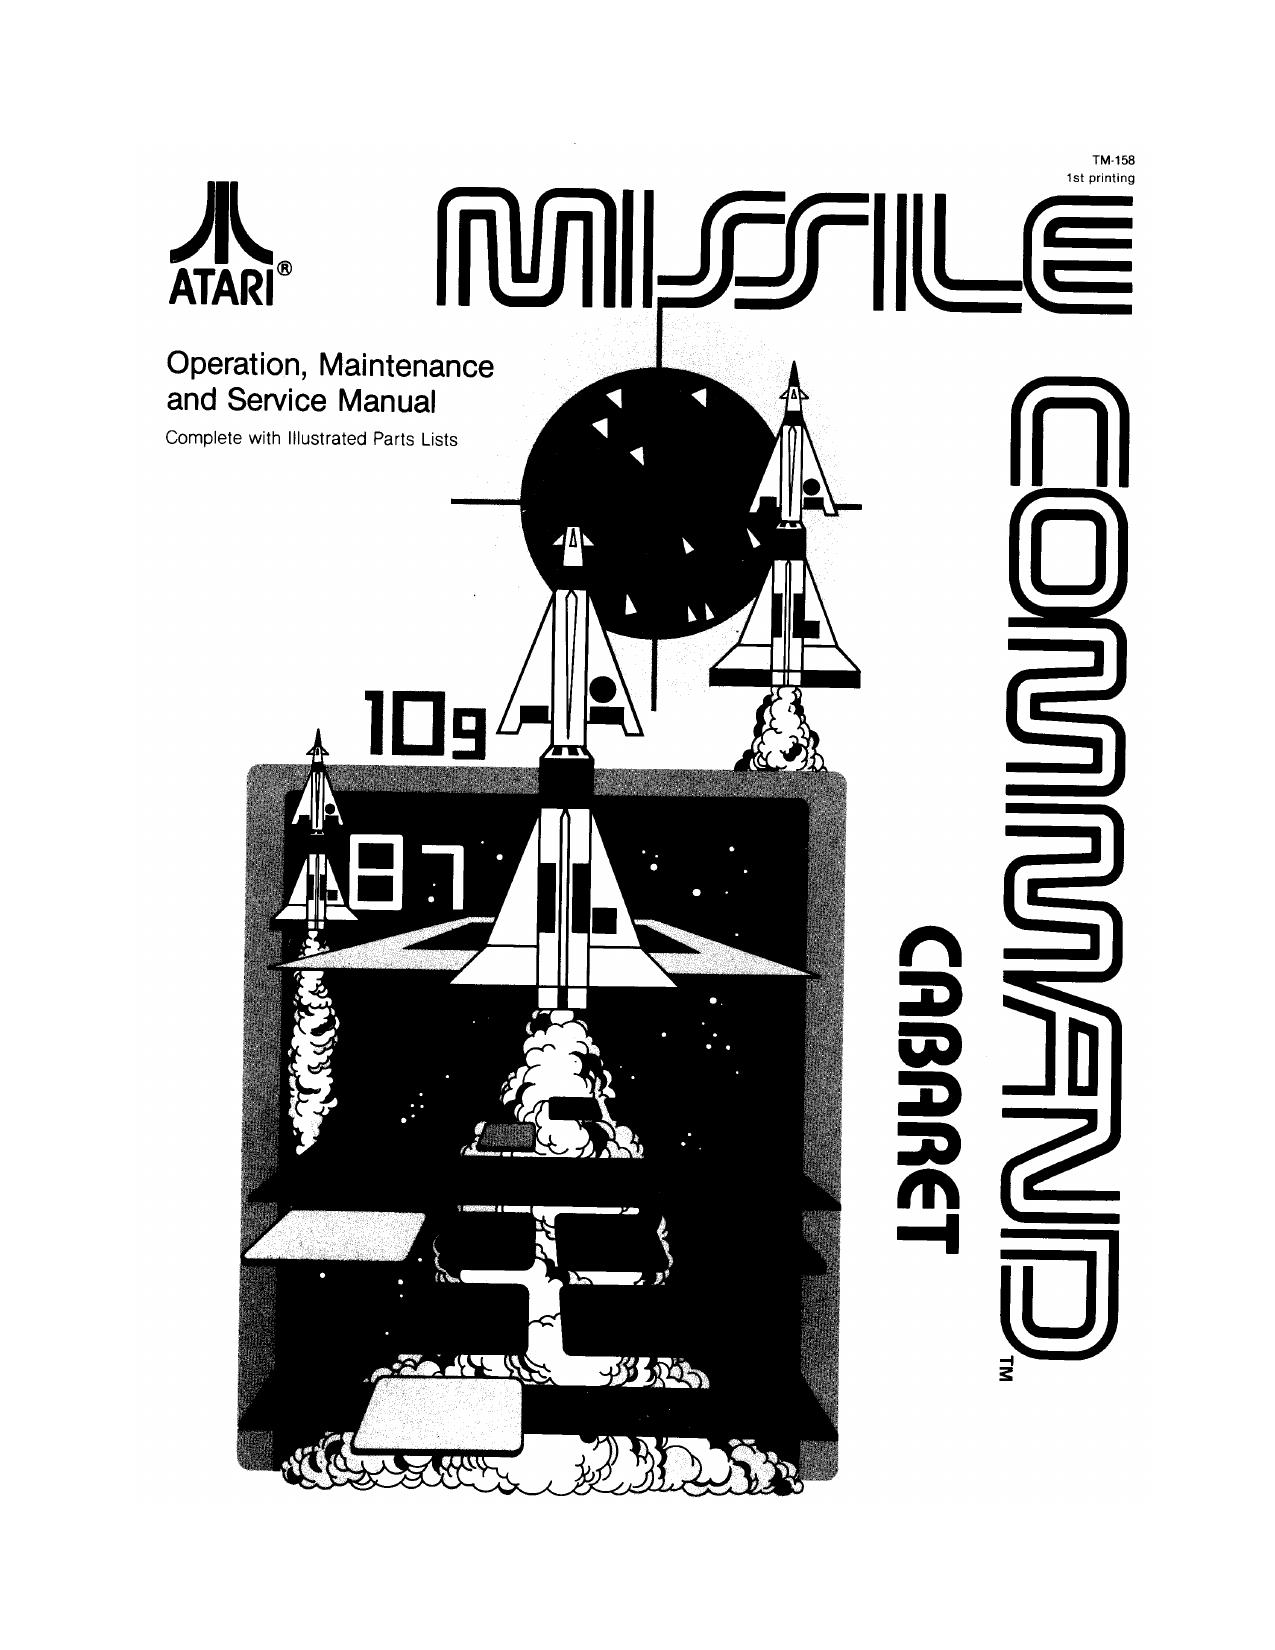 Missile Command Caberat TM-158 1st Printing